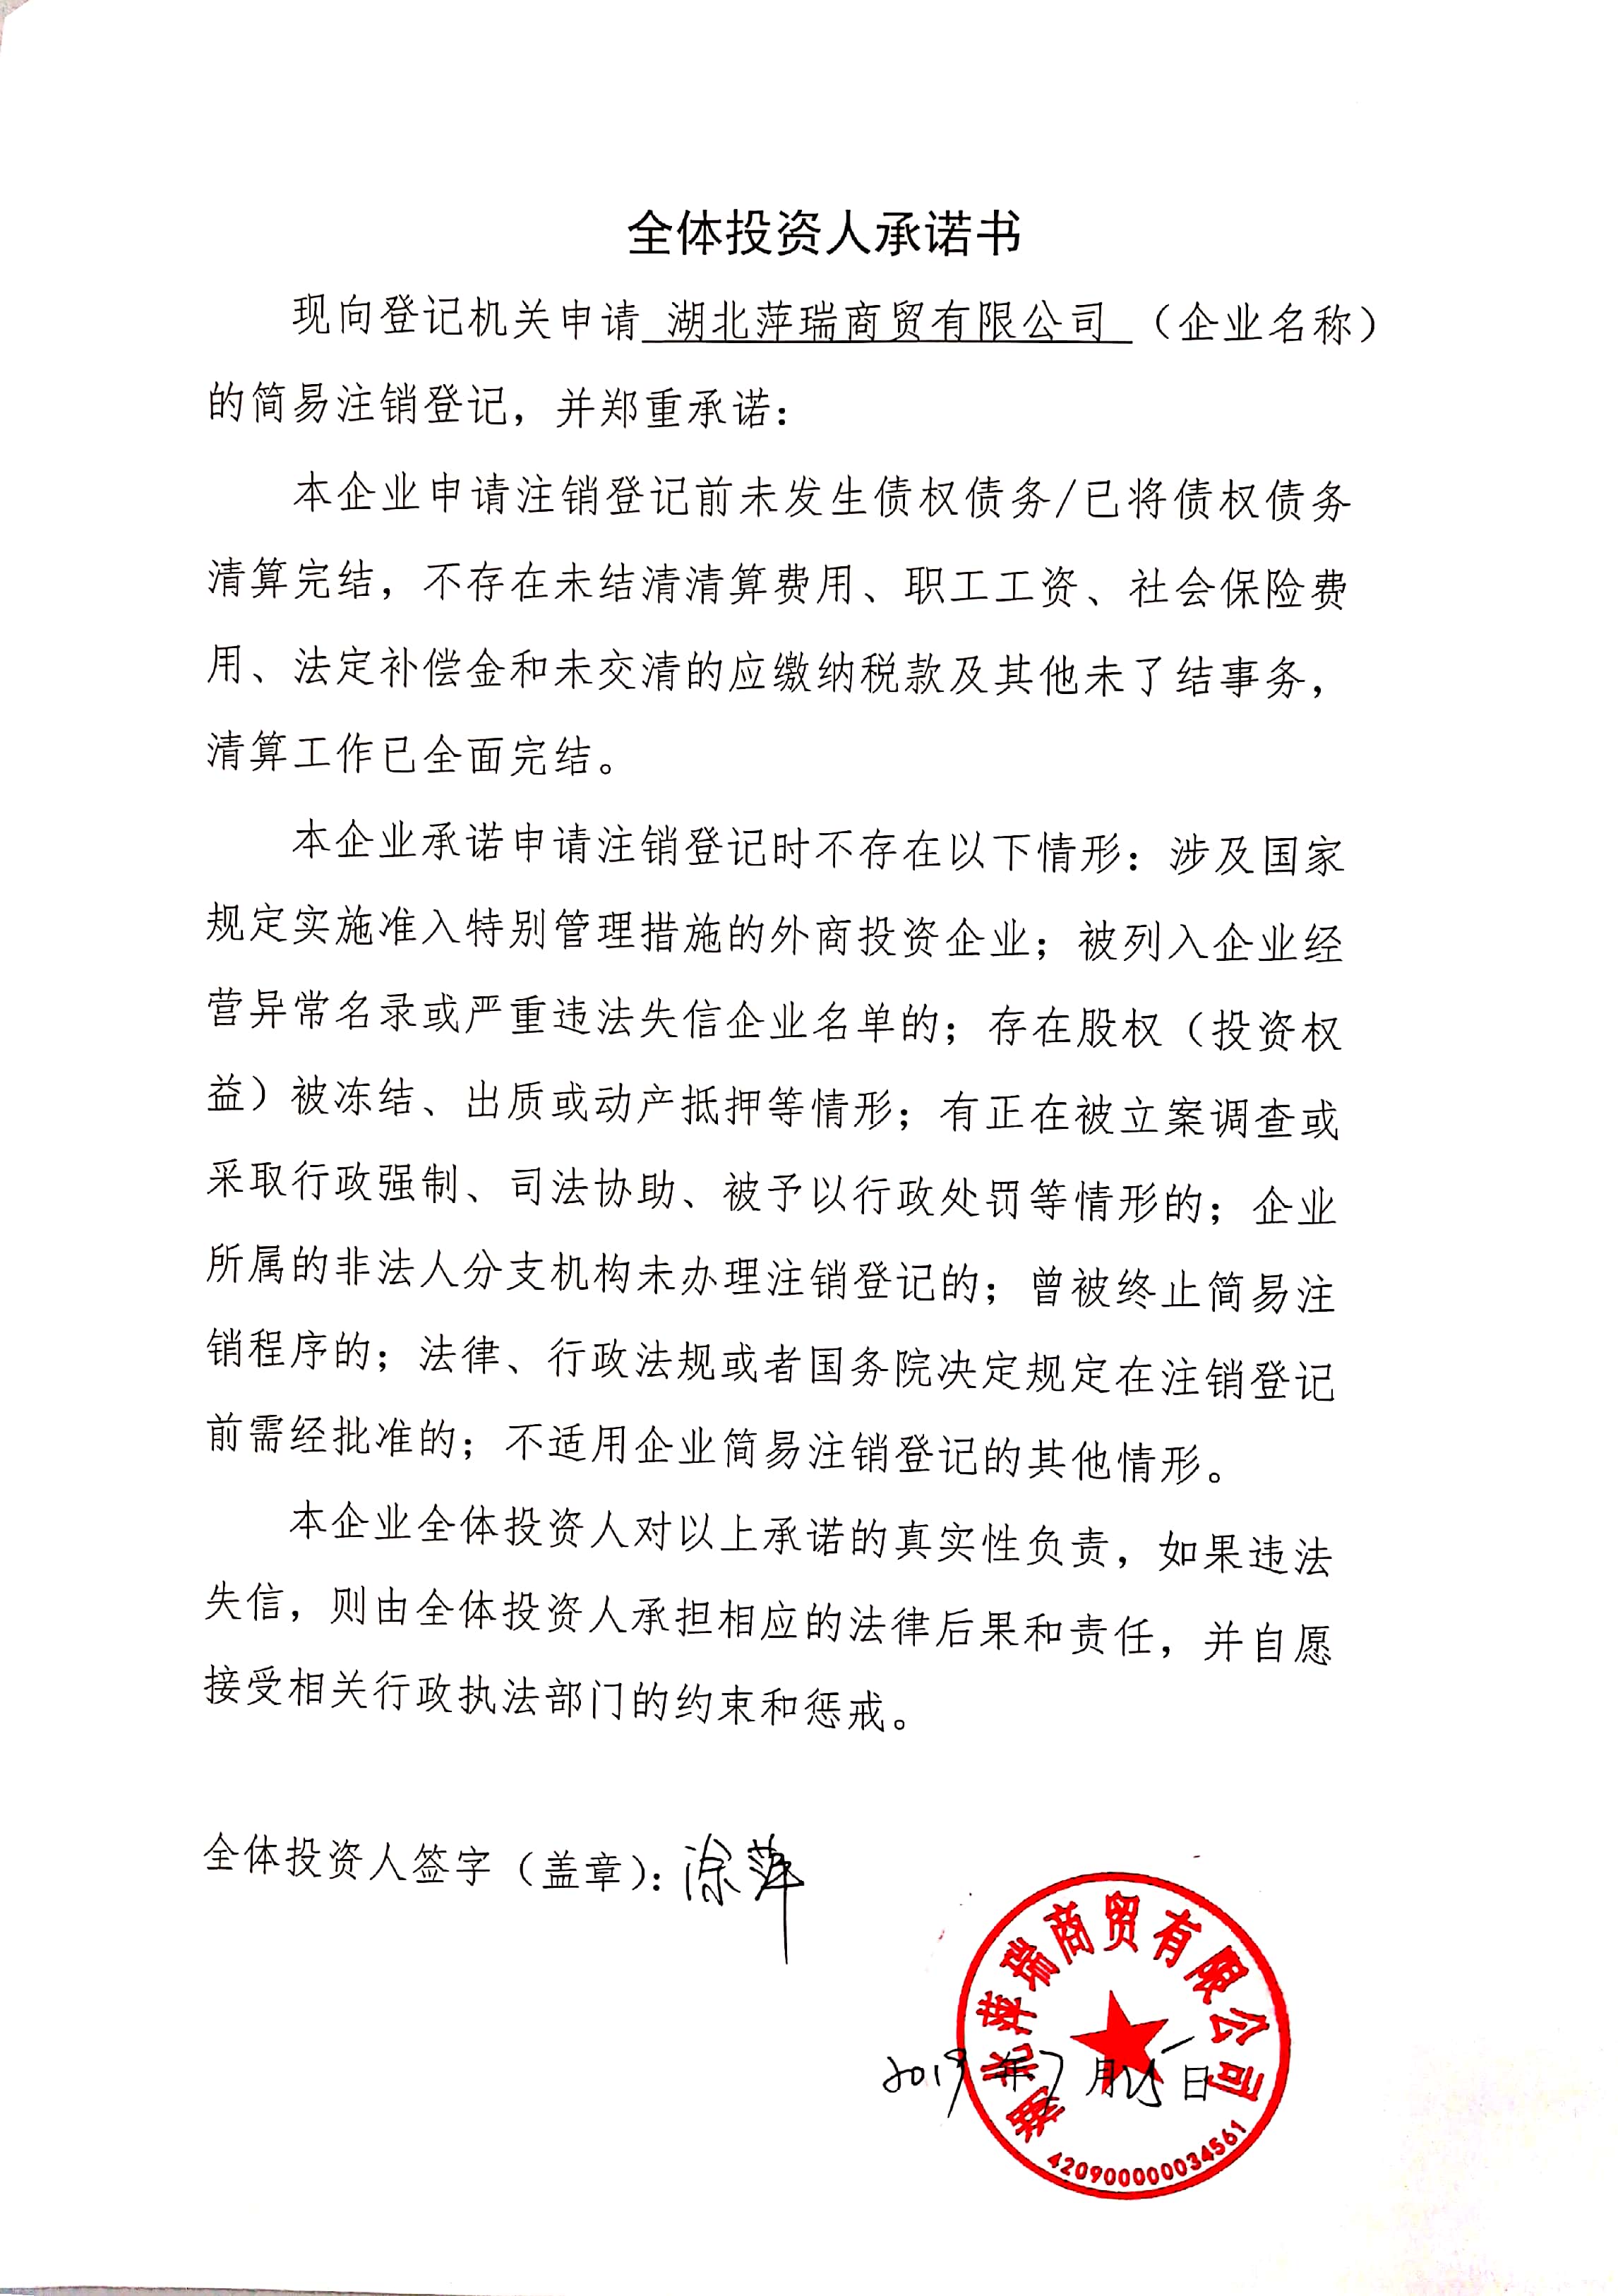 企业公告信息 企业名称 湖北萍瑞商贸有限公司 统一社会信用代码/注册